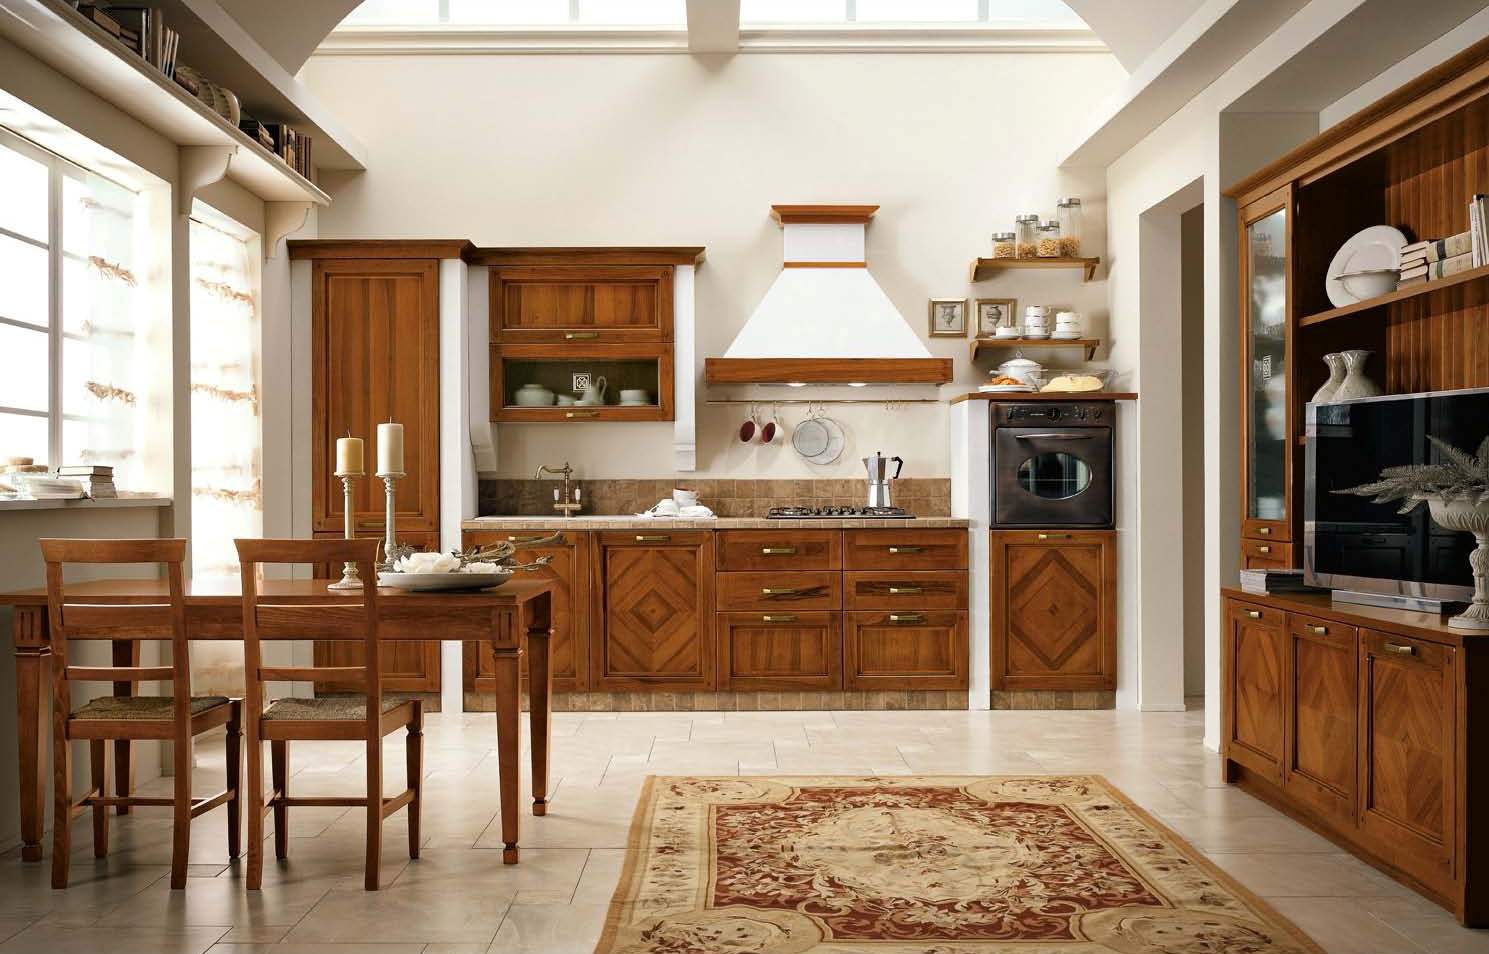 Кухня в стиле модерн (80 фото) - дизайн, красивые идеи интерьеров, ремонт и отделка